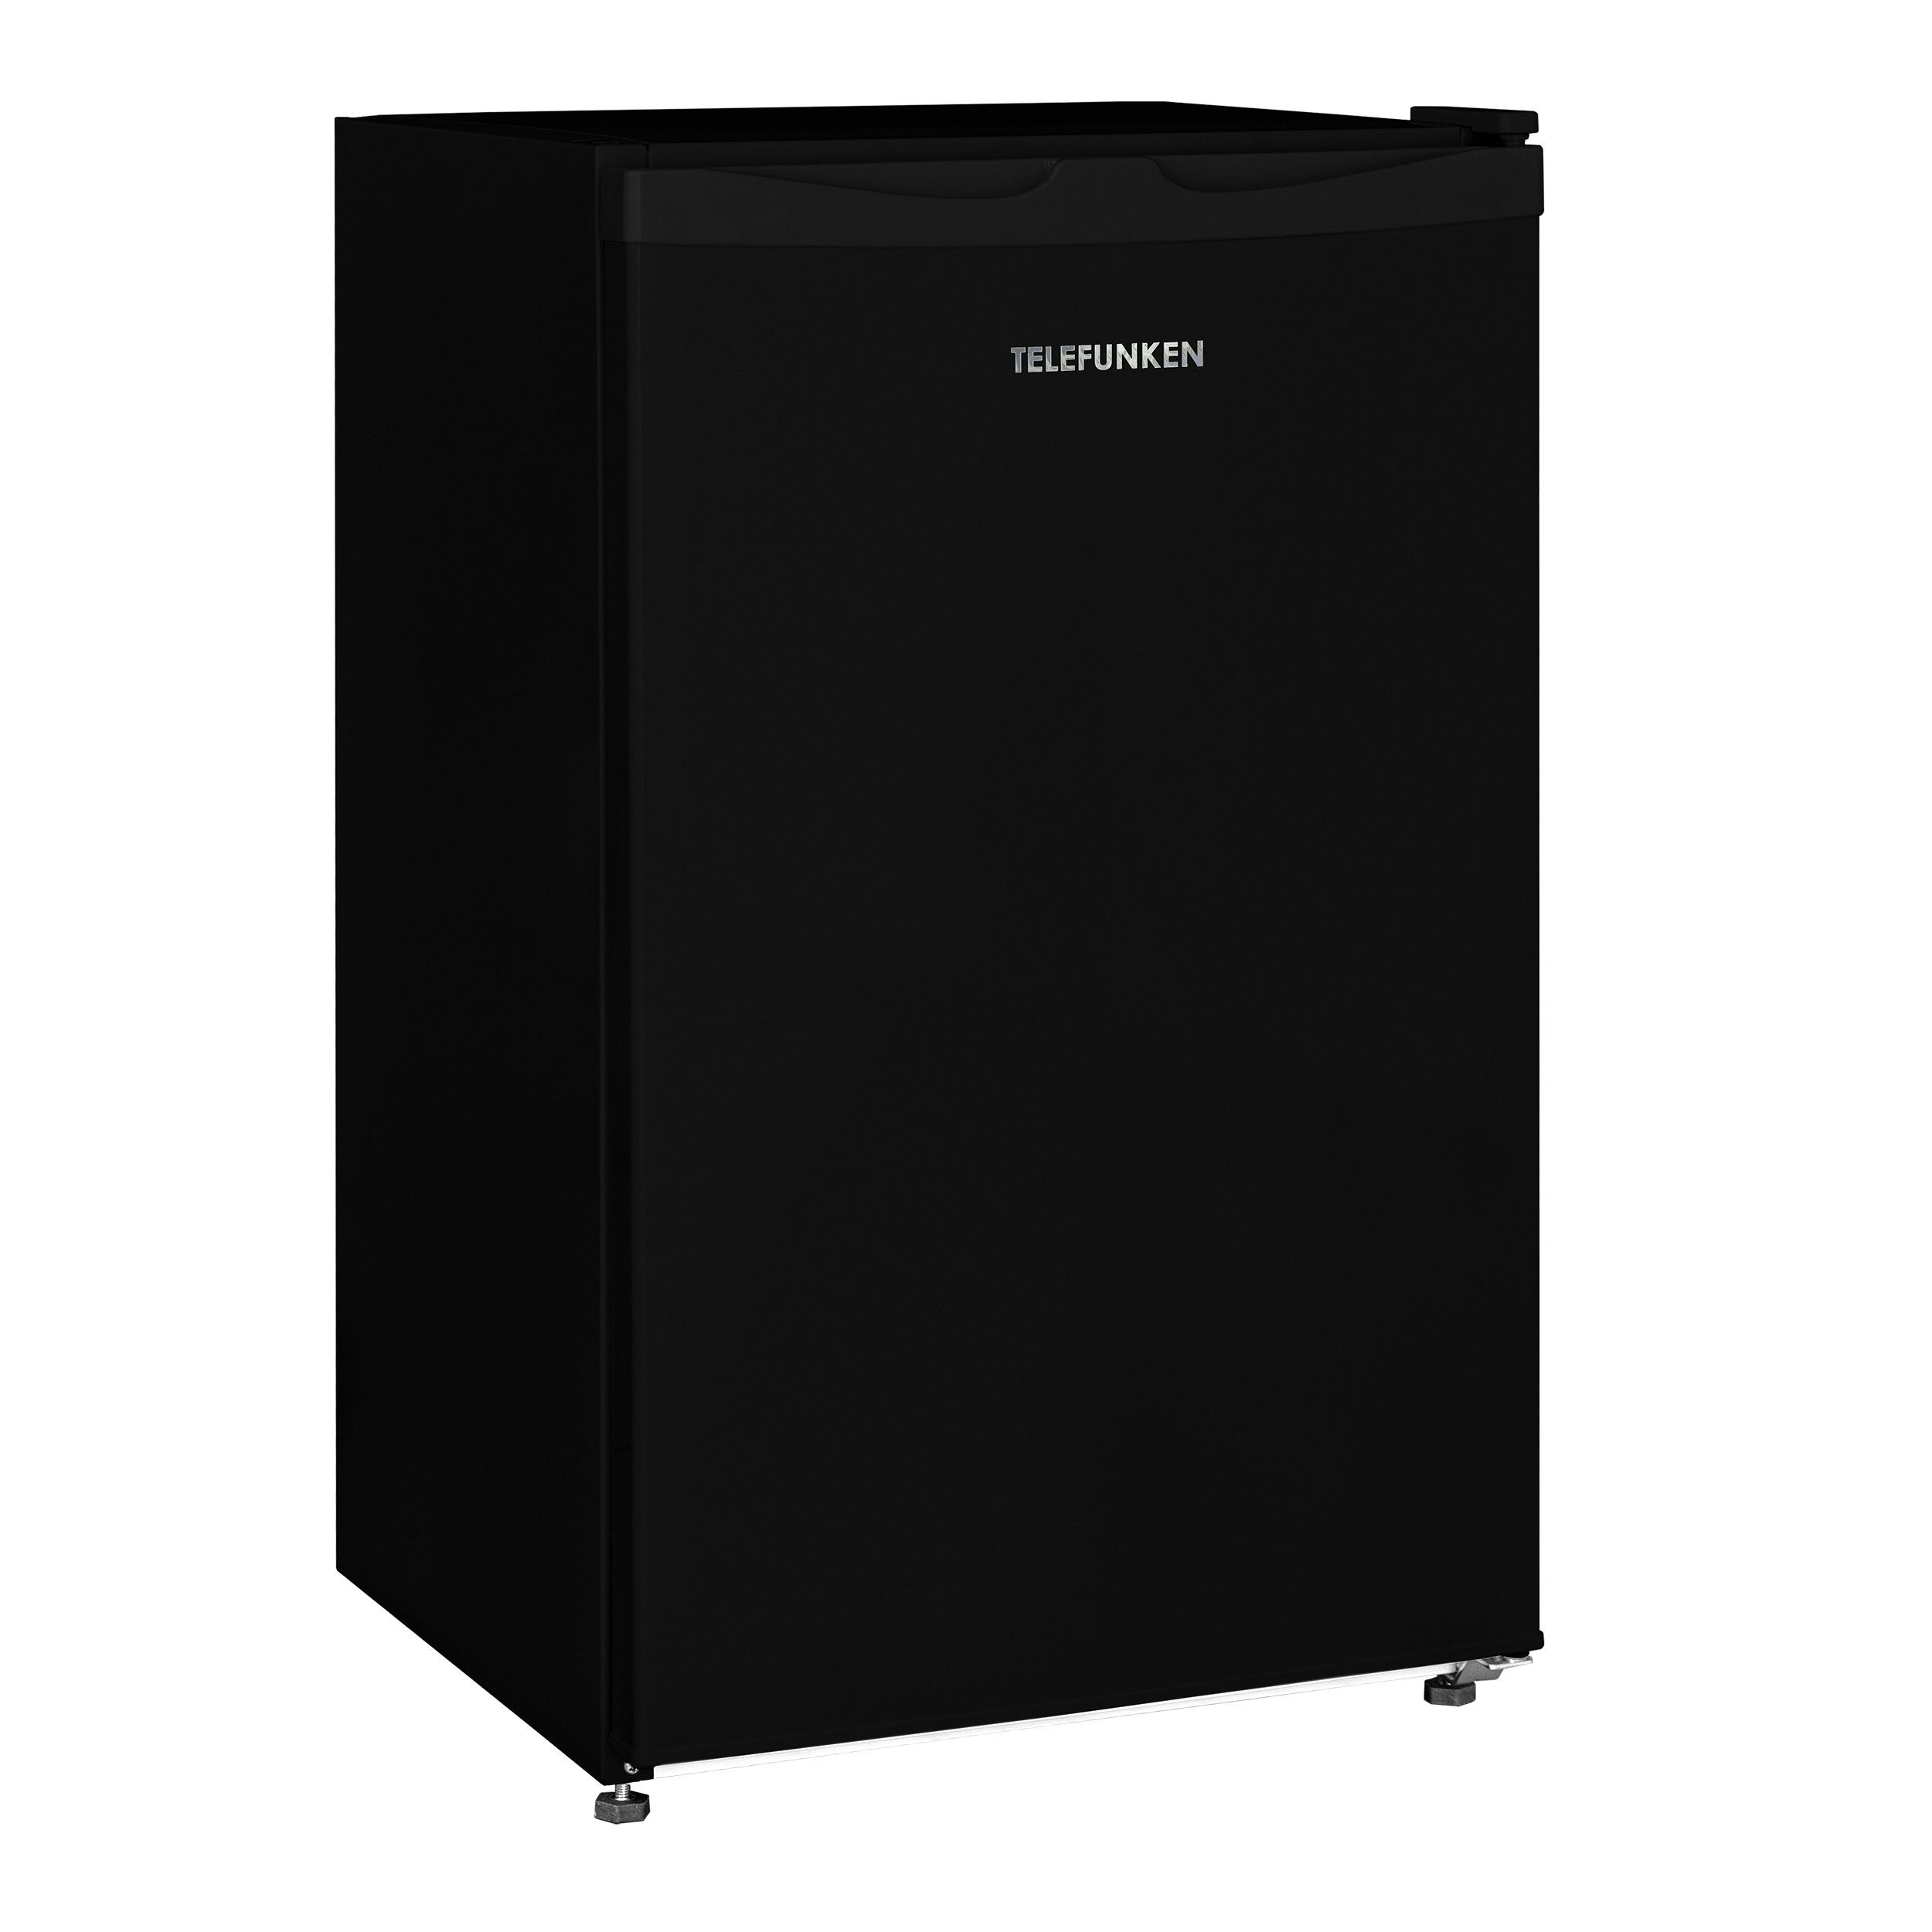 Großer Kühlschrank Großraumkühlschrank ohne Gefrierfach DKS340X freistehend